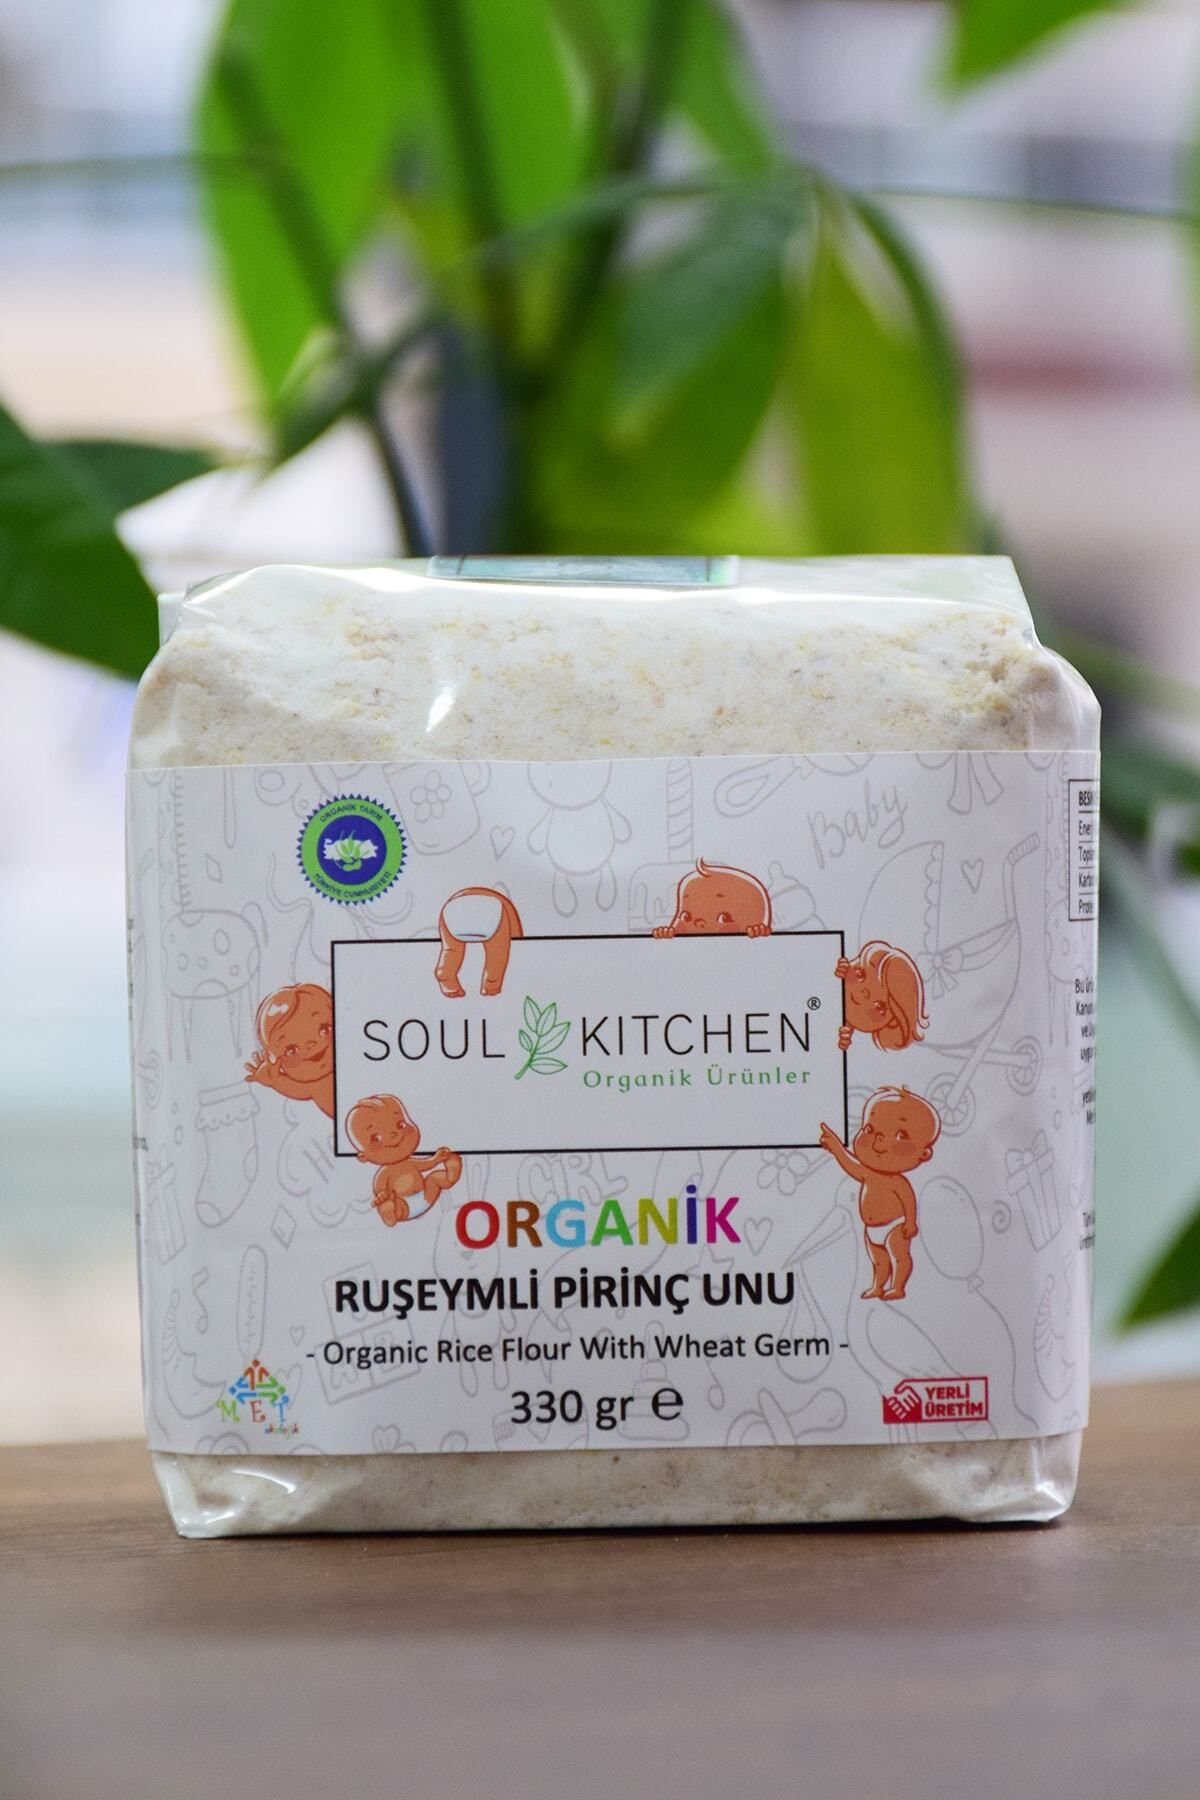 Soul Kitchen Organik Ürünler Organik Bebek Ruşeymli Pirinç Unu 330gr - Eko Paket